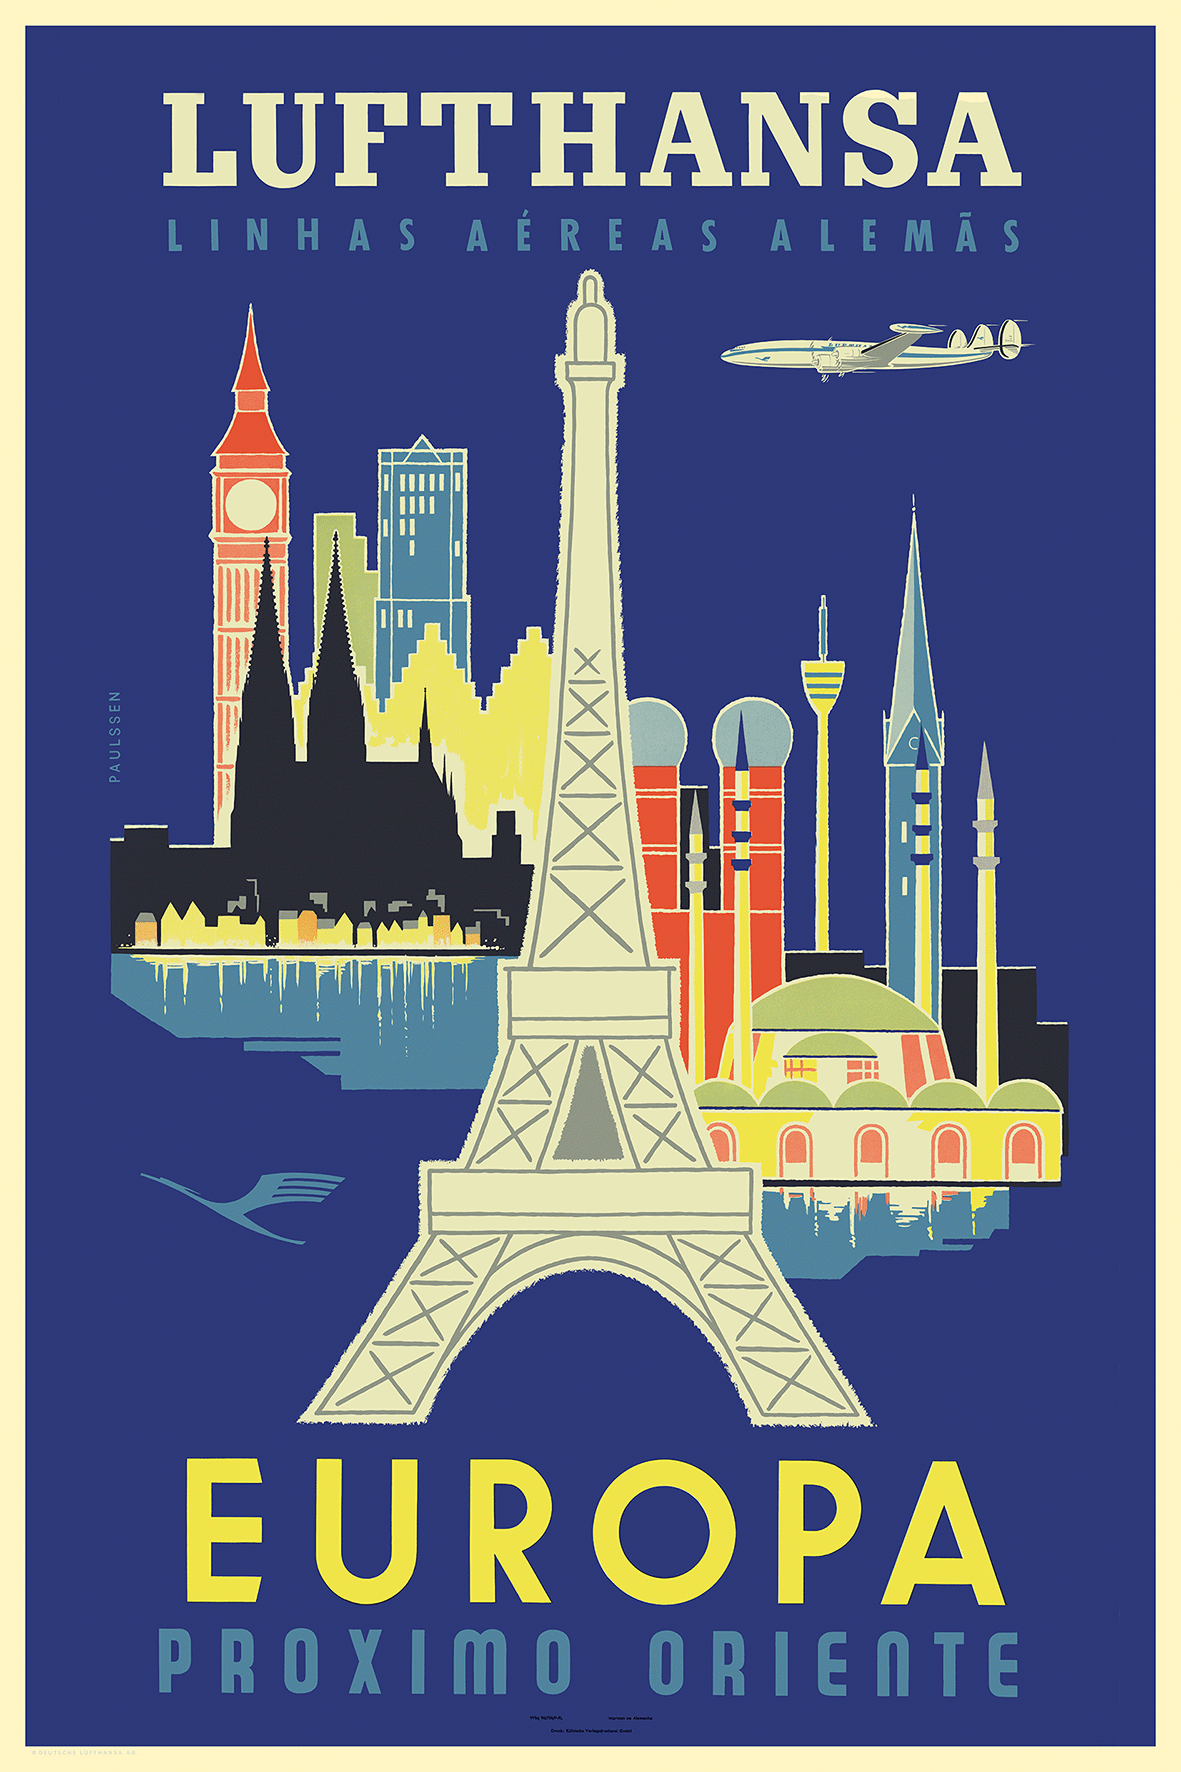 Lufthansa, Europa, 1960s [Tour Eiffel].